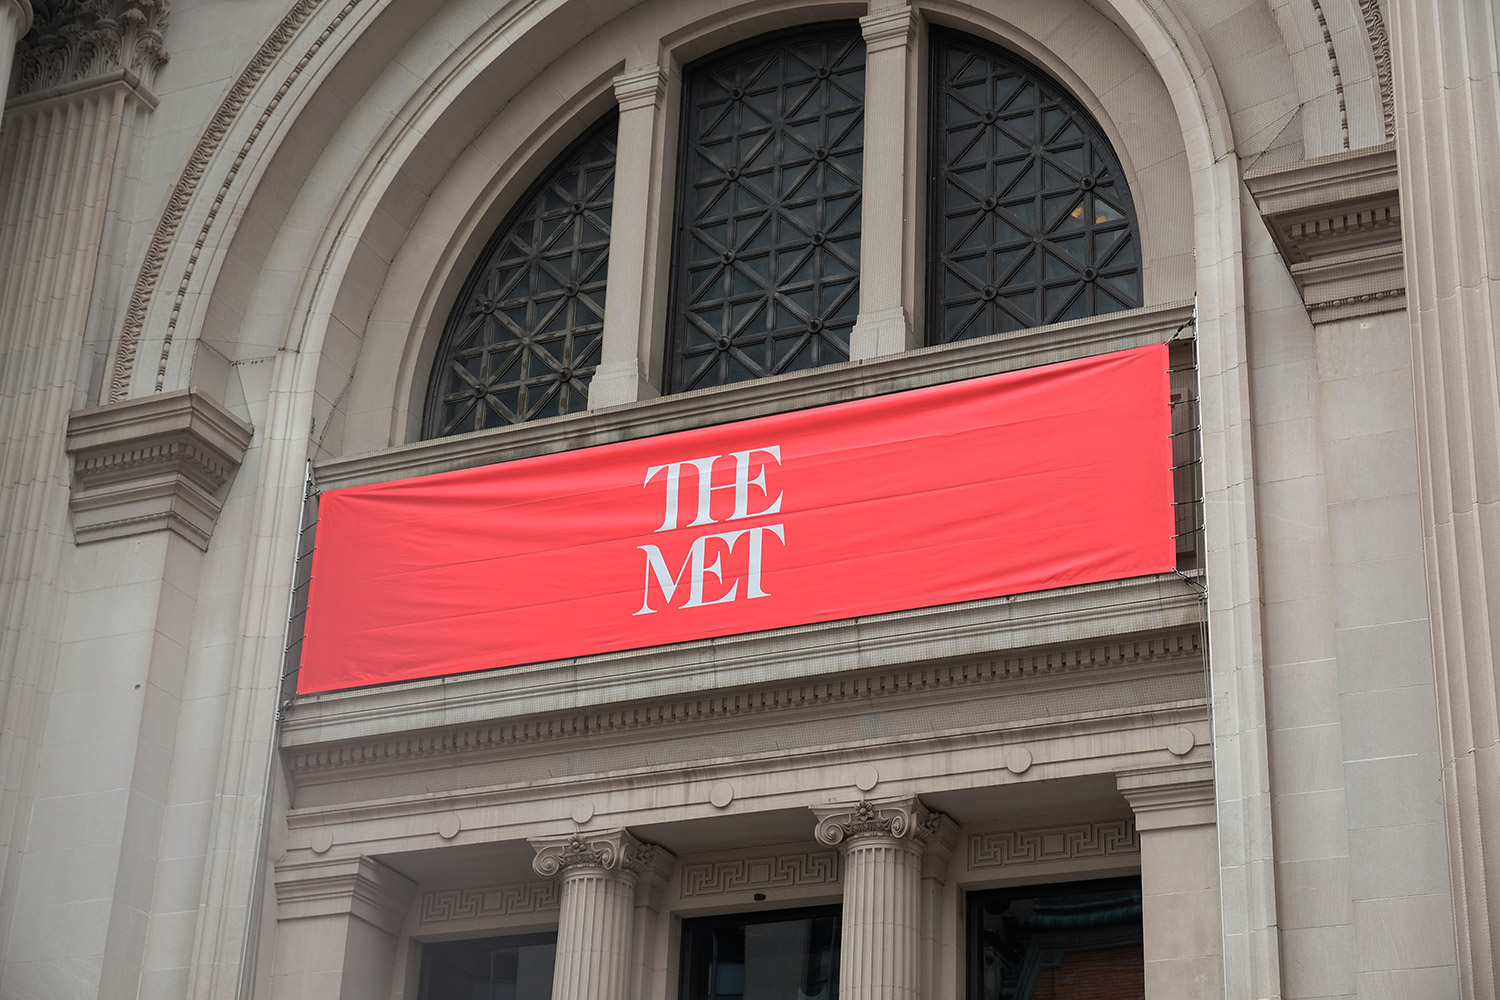 Visiter le Metropolitan Museum of Art (MET) à New York